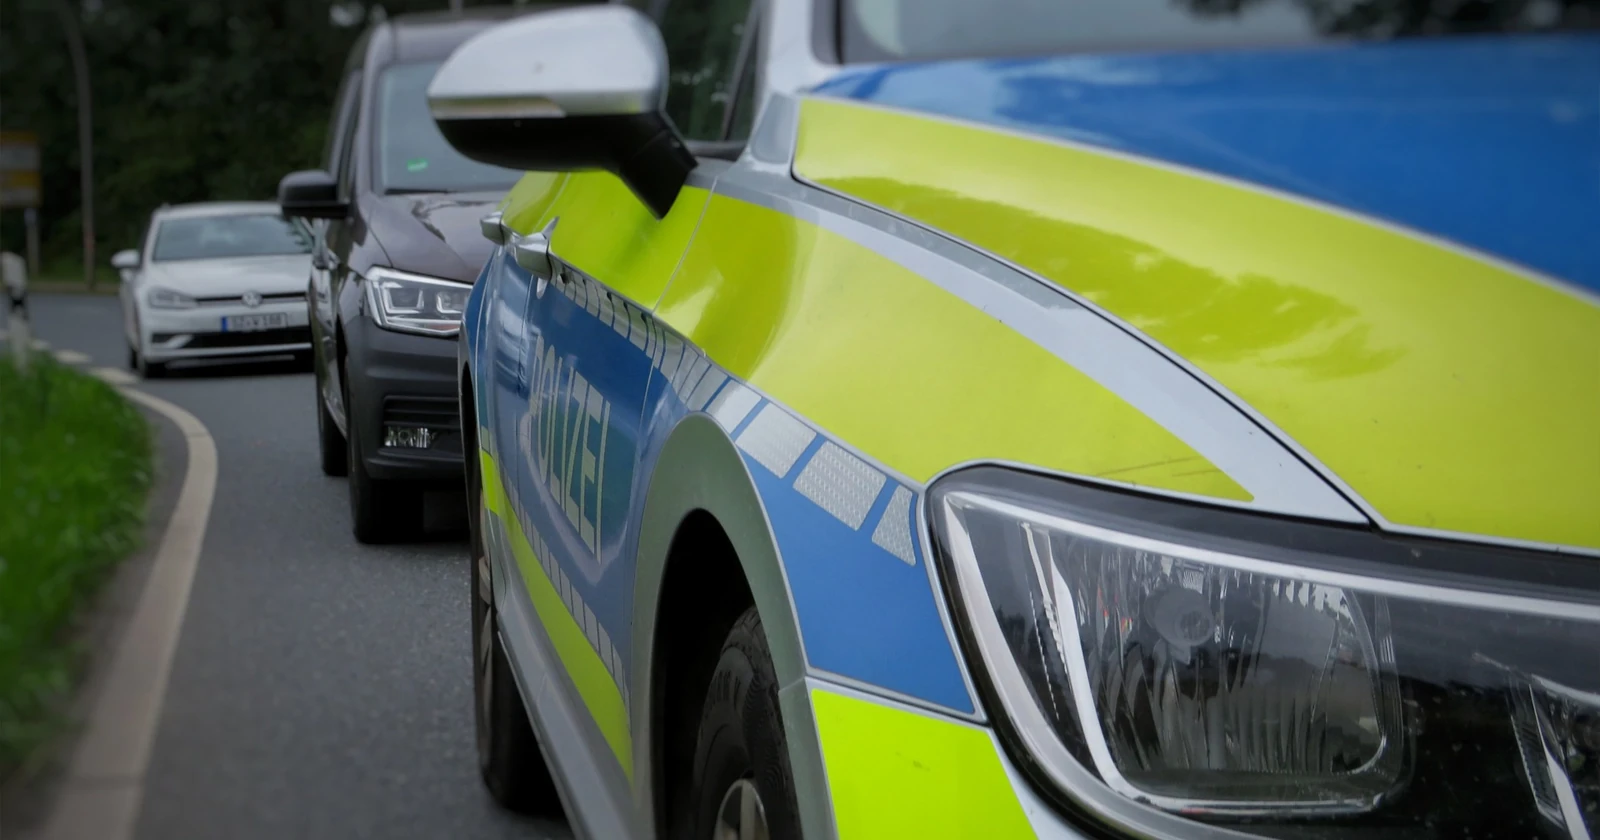 Polizeiautobahnstation Ruchheim - VW-Fahrer unter Einfluss von Drogen unterwegs